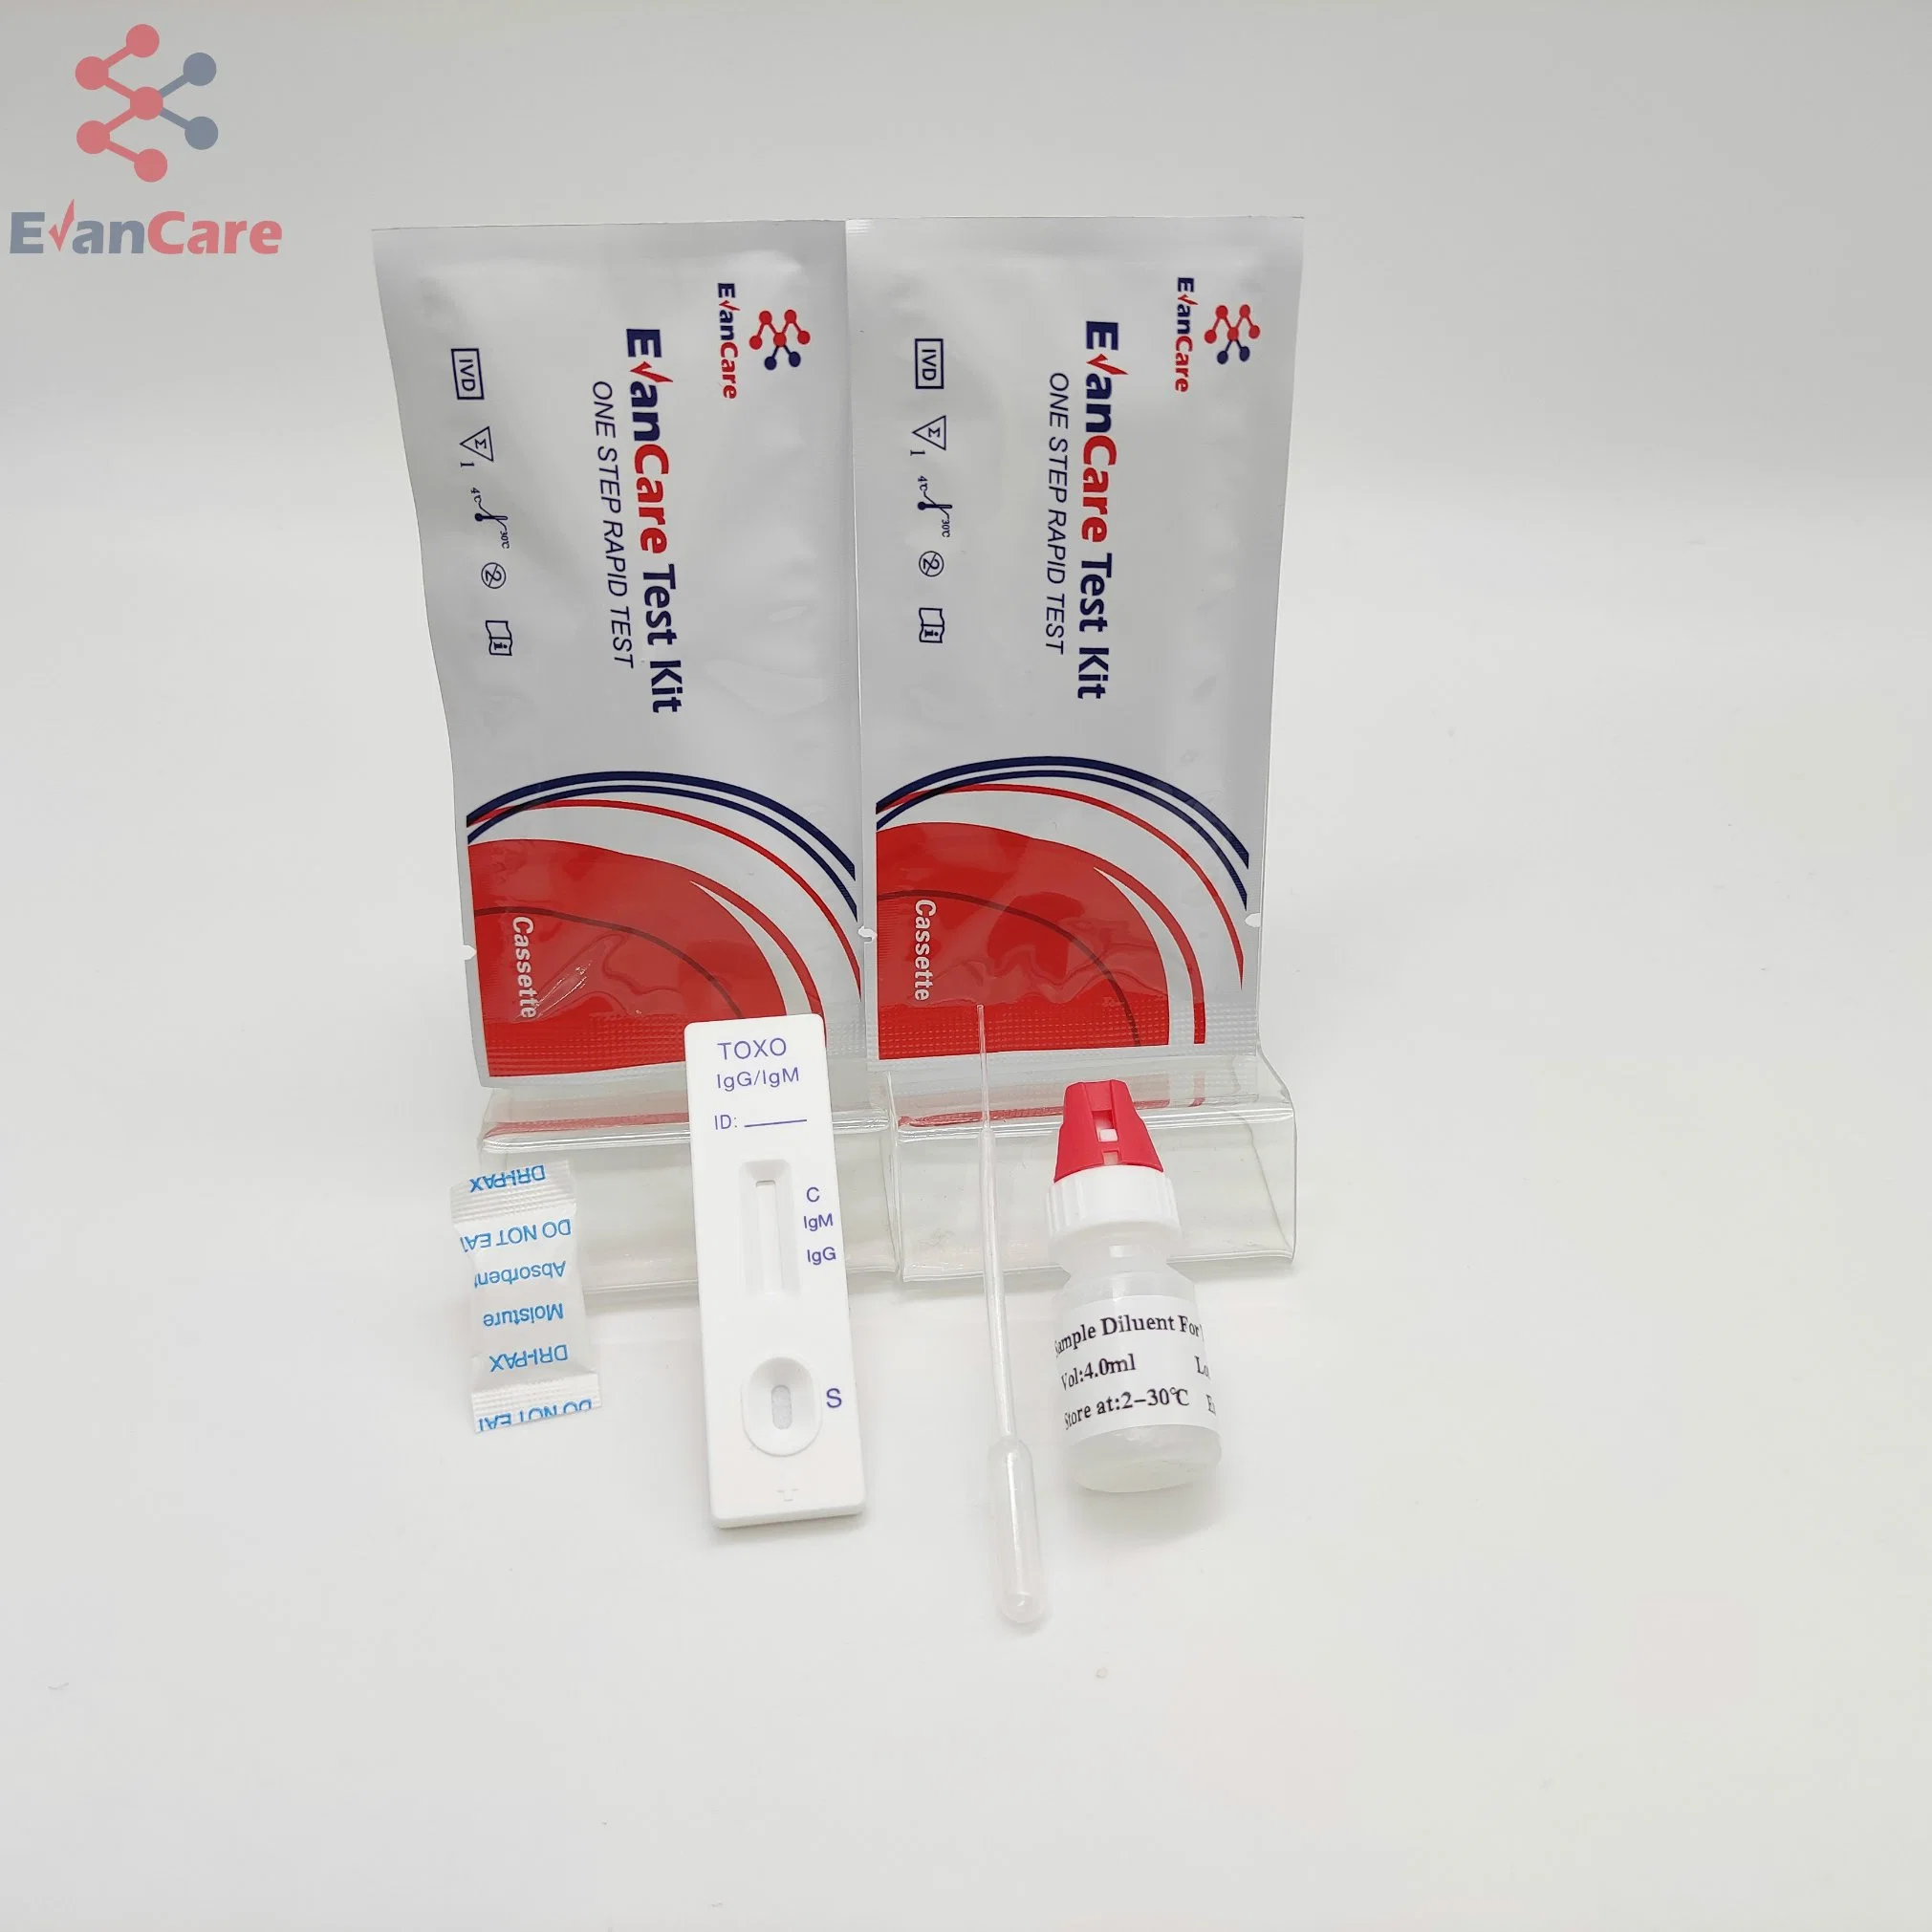 Teste preciso de Toxoplasma em cassete de teste/Teste rápido de diagnóstico médico Toxo / cassete de teste rápido de fluxo lateral